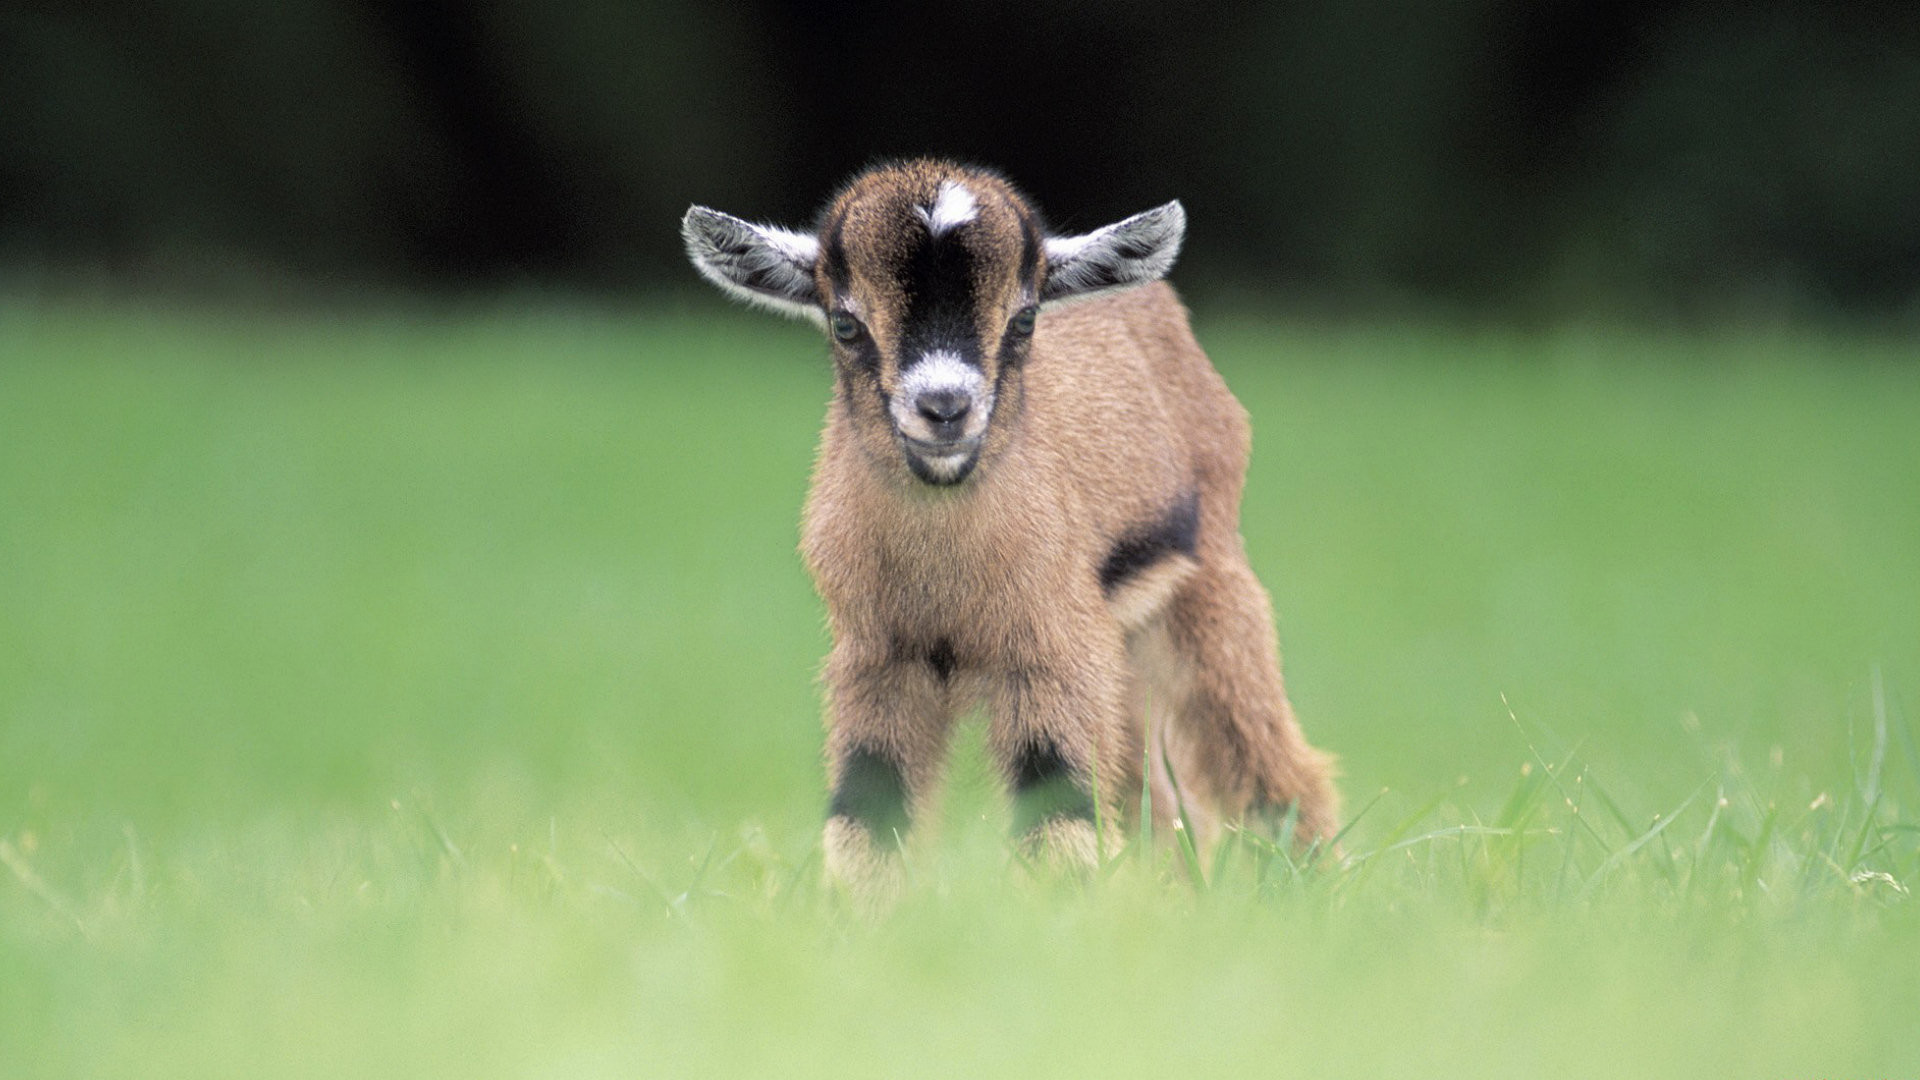 12871 Goat Wallpaper Images Stock Photos  Vectors  Shutterstock